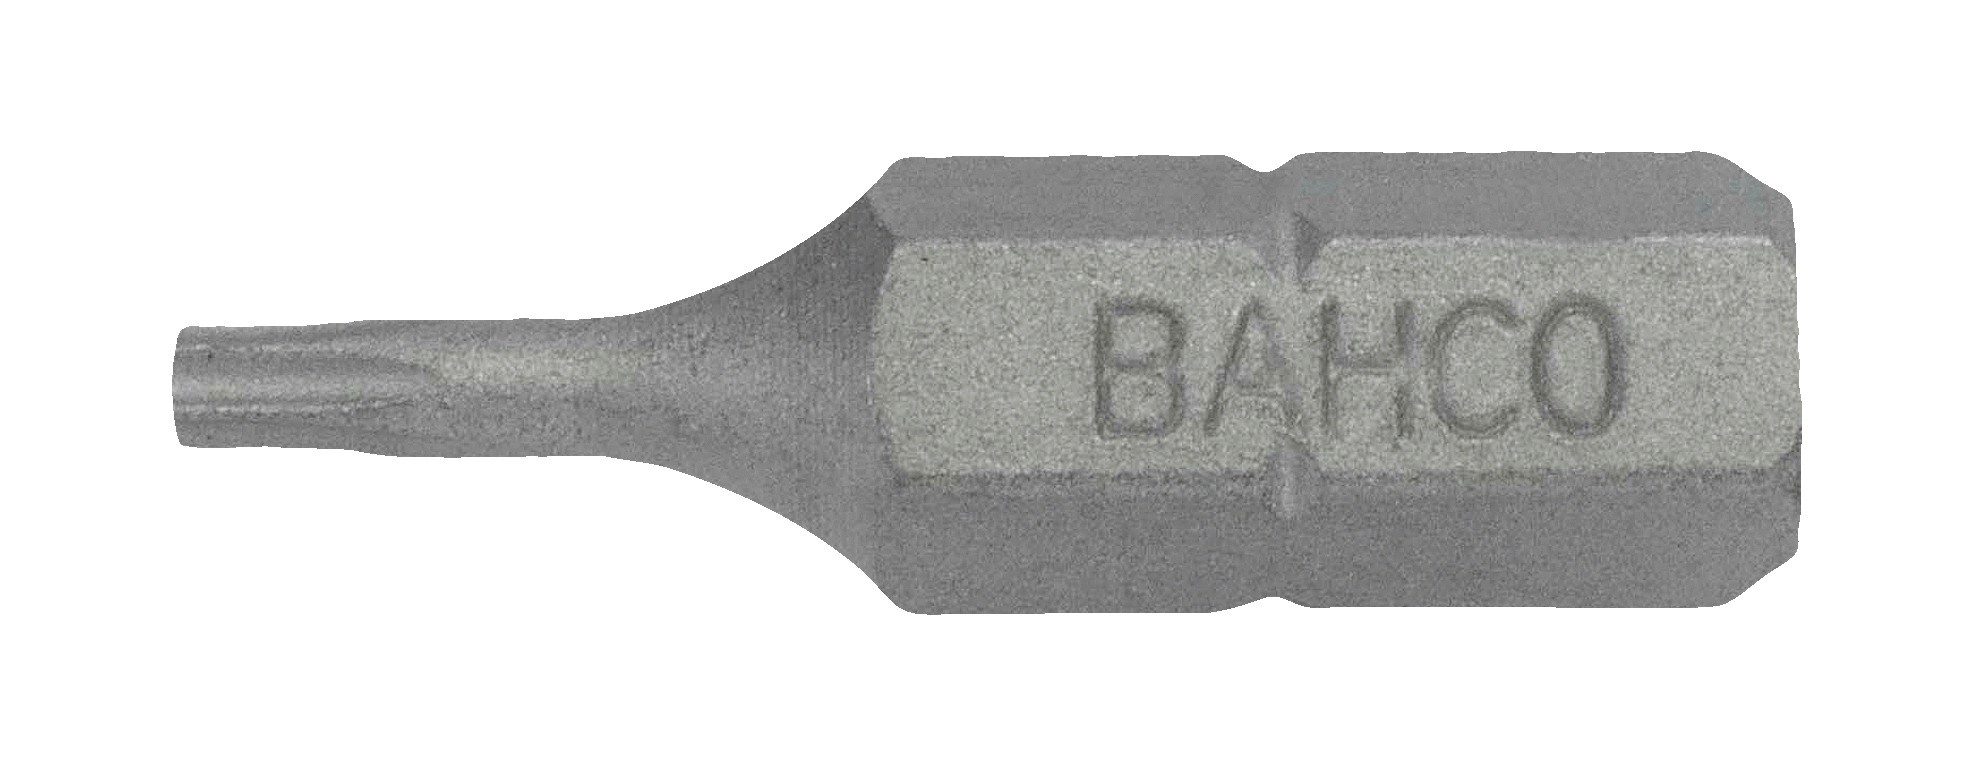 картинка Стандартные биты для отверток Torx® TR, 25 мм BAHCO 59S/TR9-3P от магазина "Элит-инструмент"